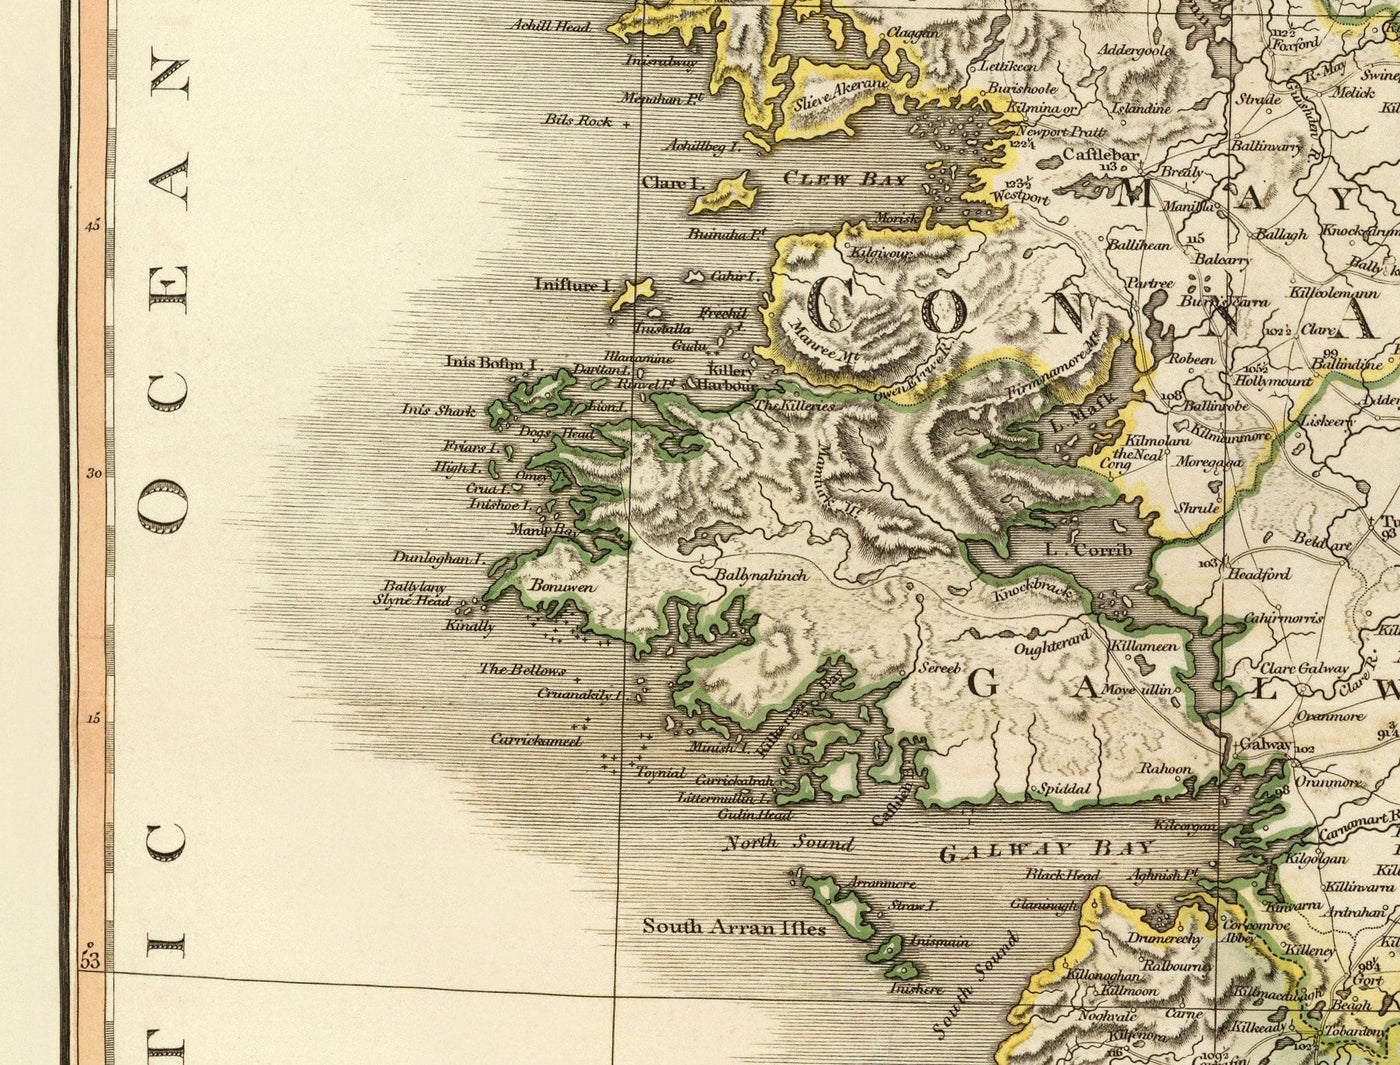 Viejo Mapa de Irlanda en 1798 por W. Faden - Mapa de Atlas de color raro - Dublín, Belfast, Cork